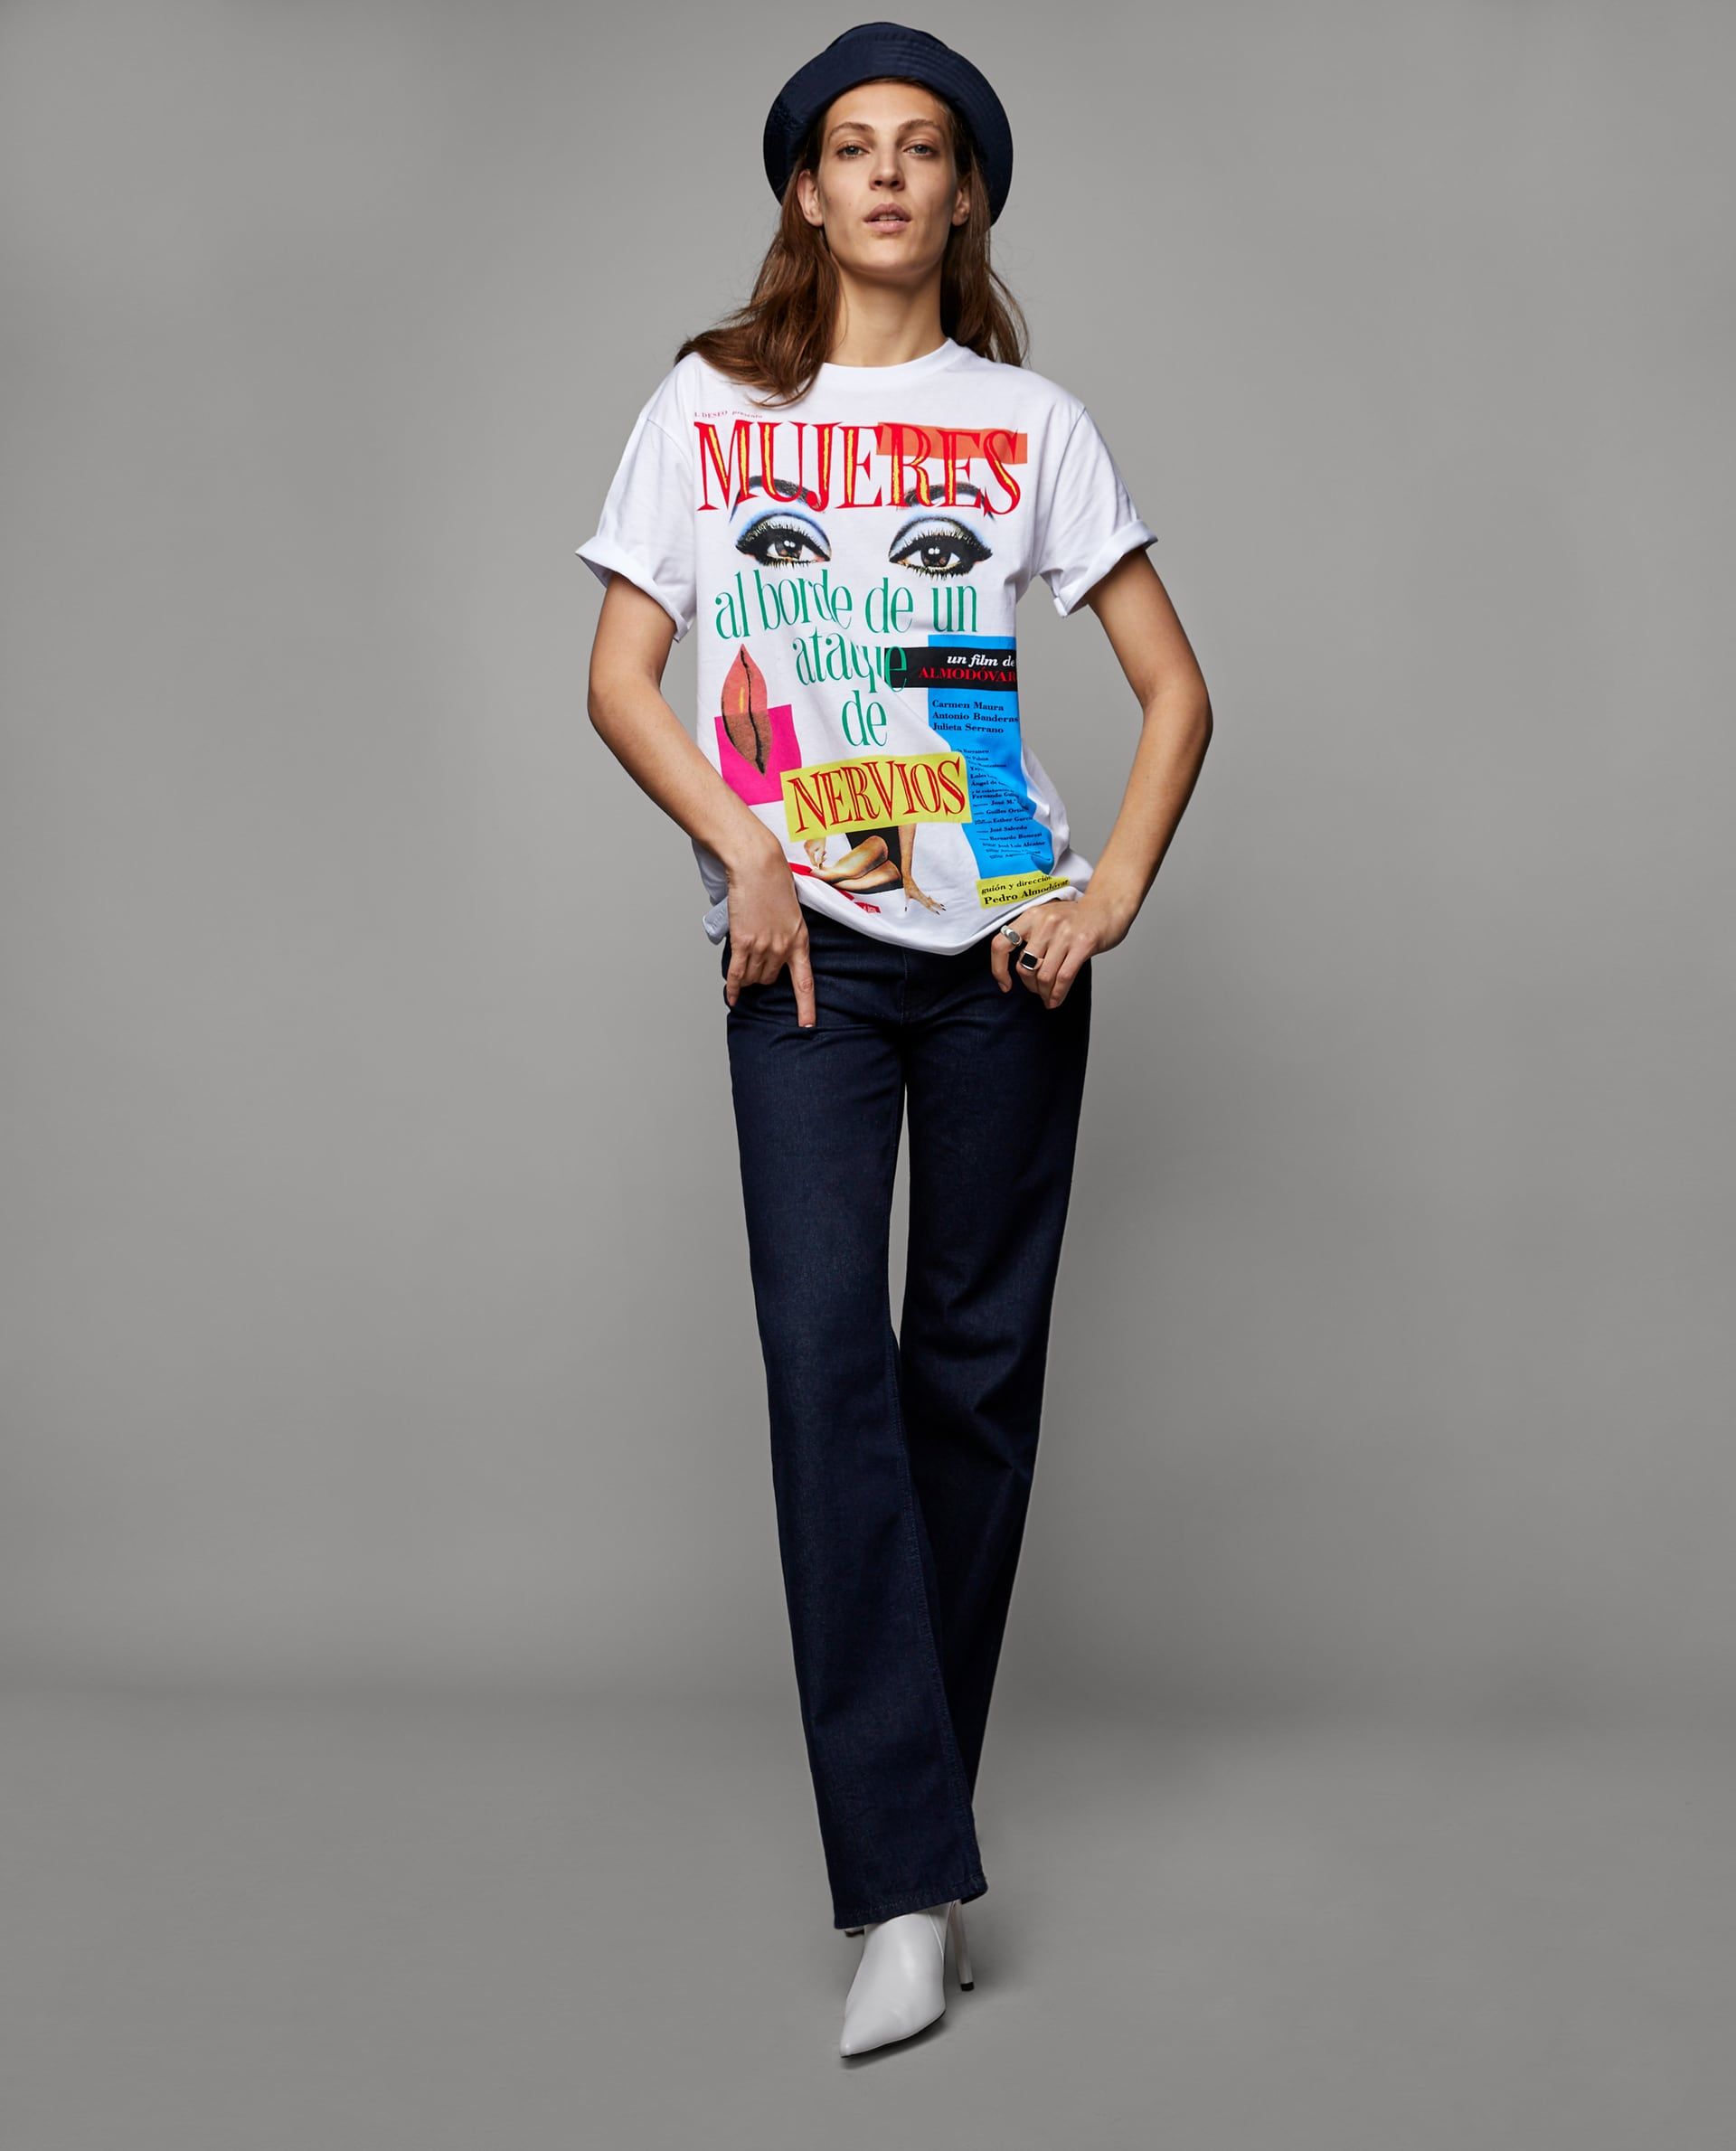 Torneado embotellamiento impuesto Zara tiene la camiseta para 'Mujeres al borde de una ataque de nervios'